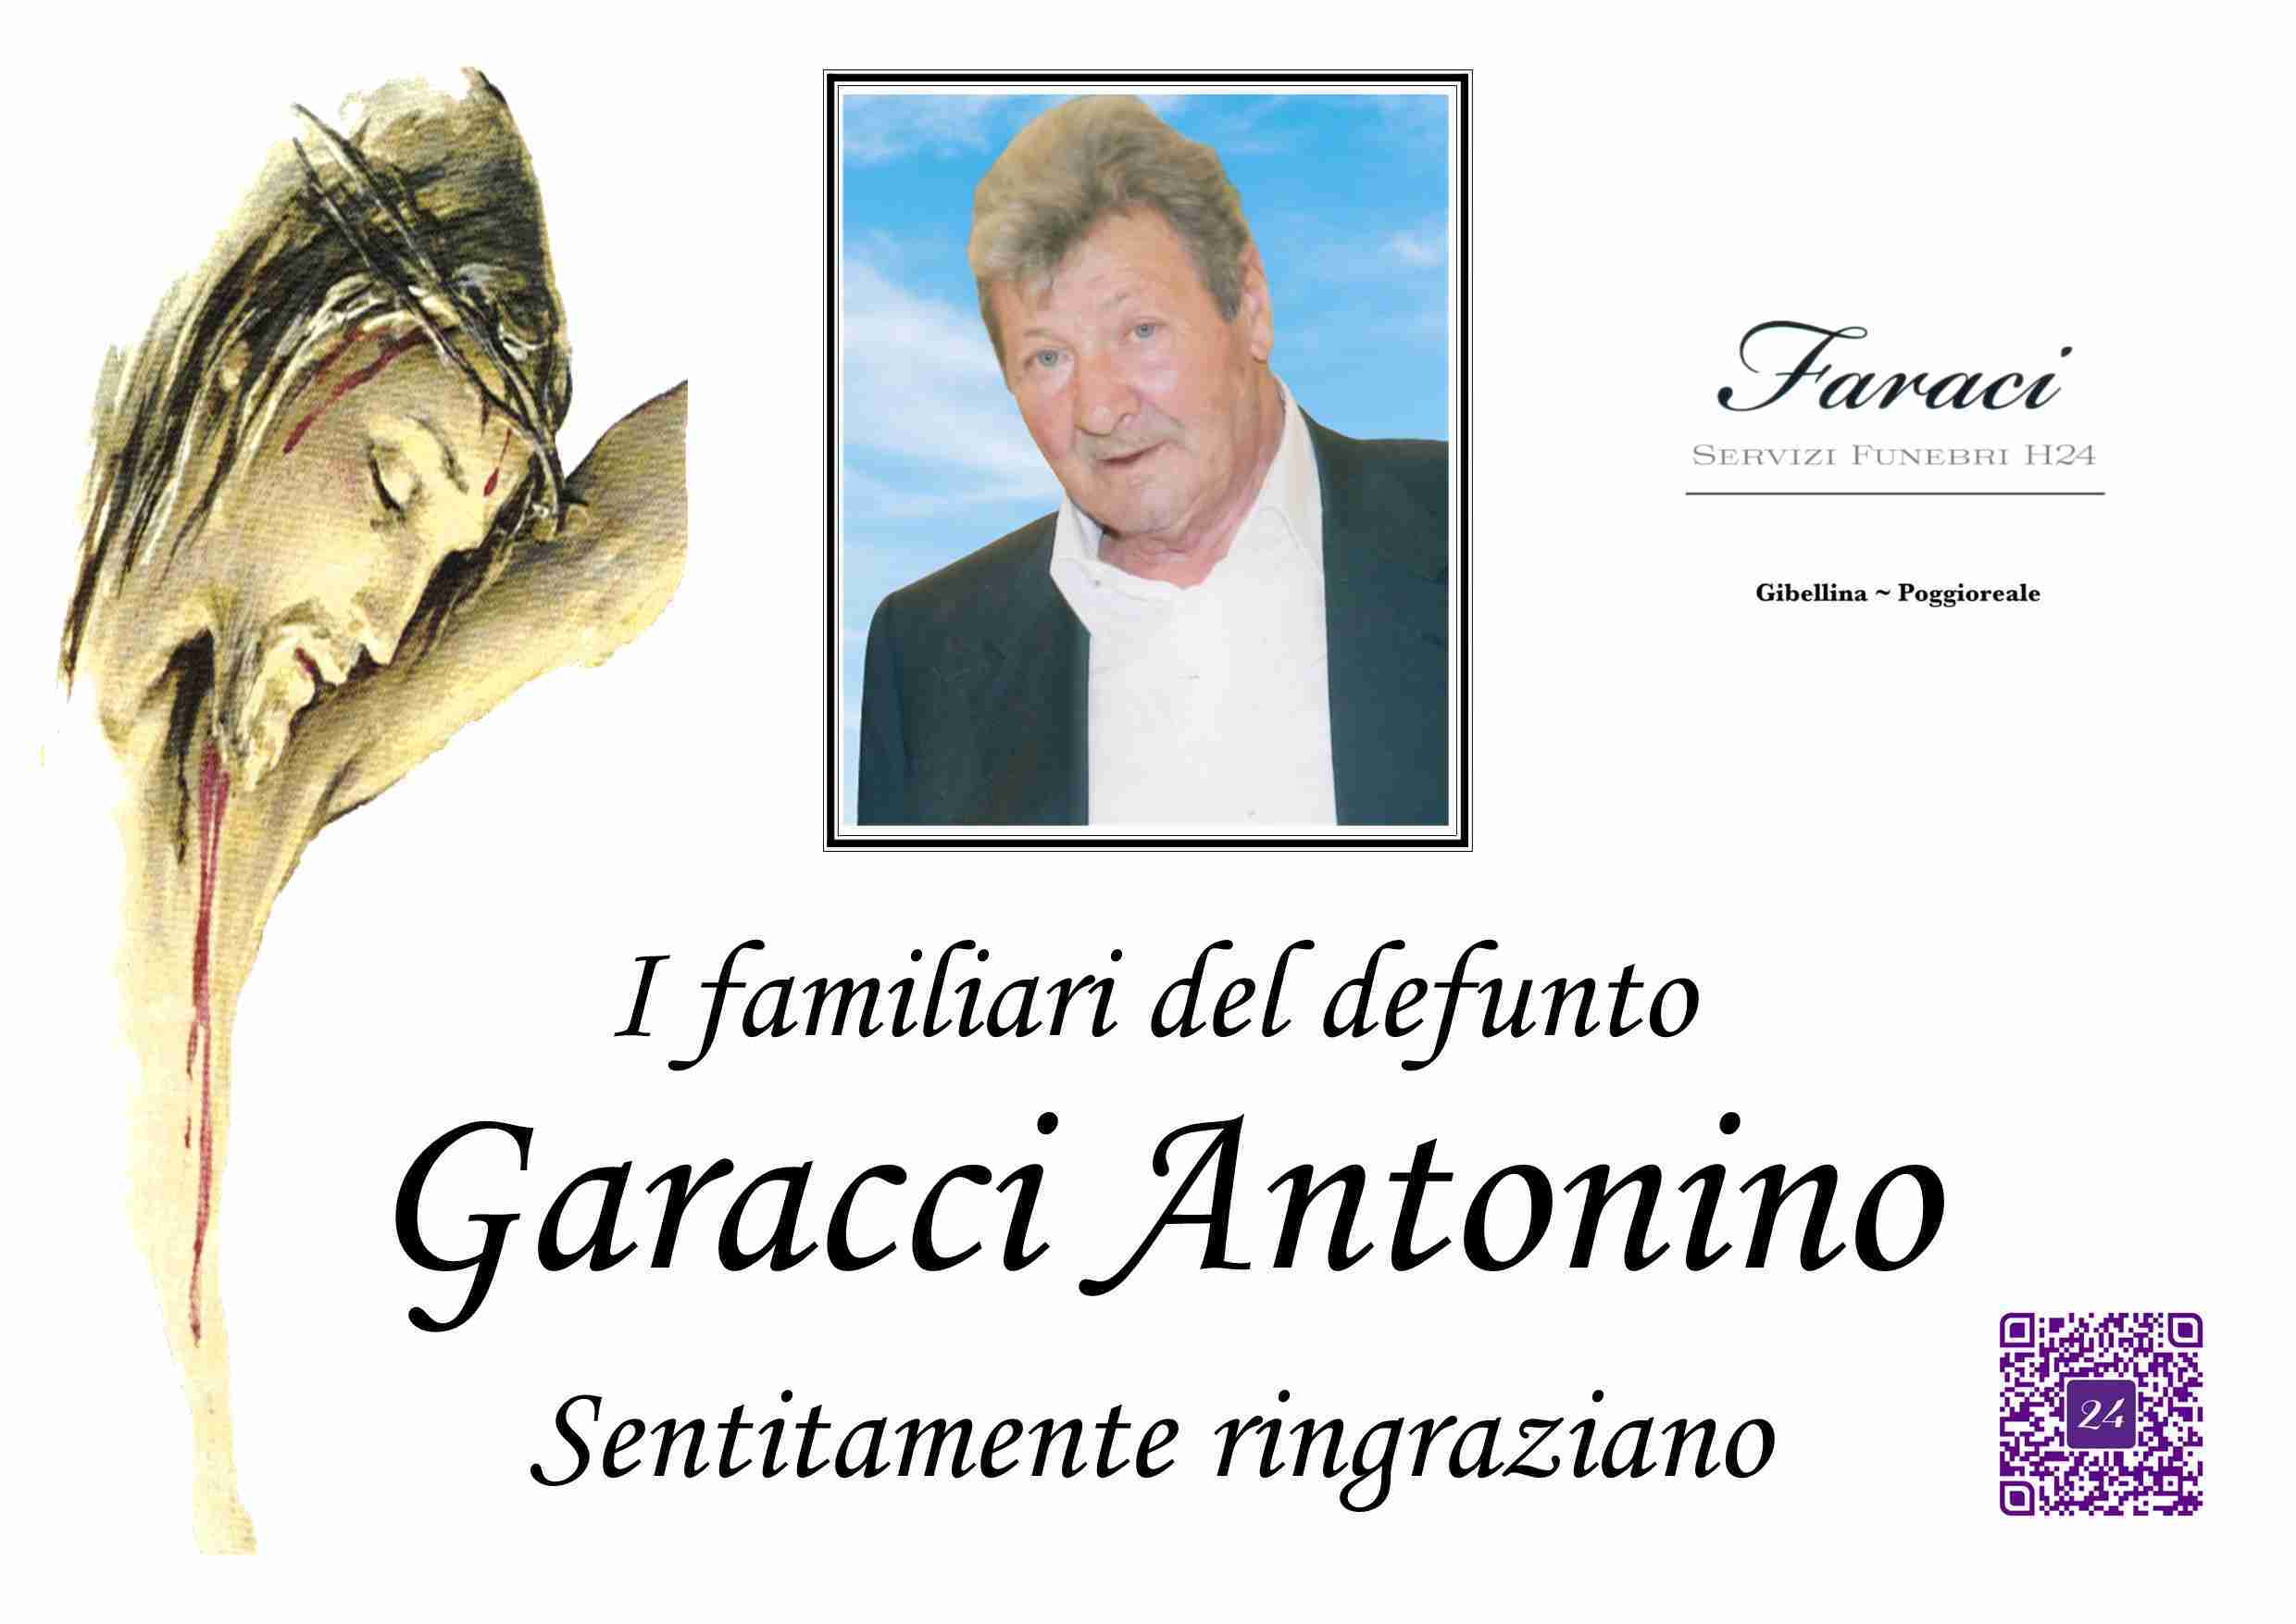 Antonino Garacci